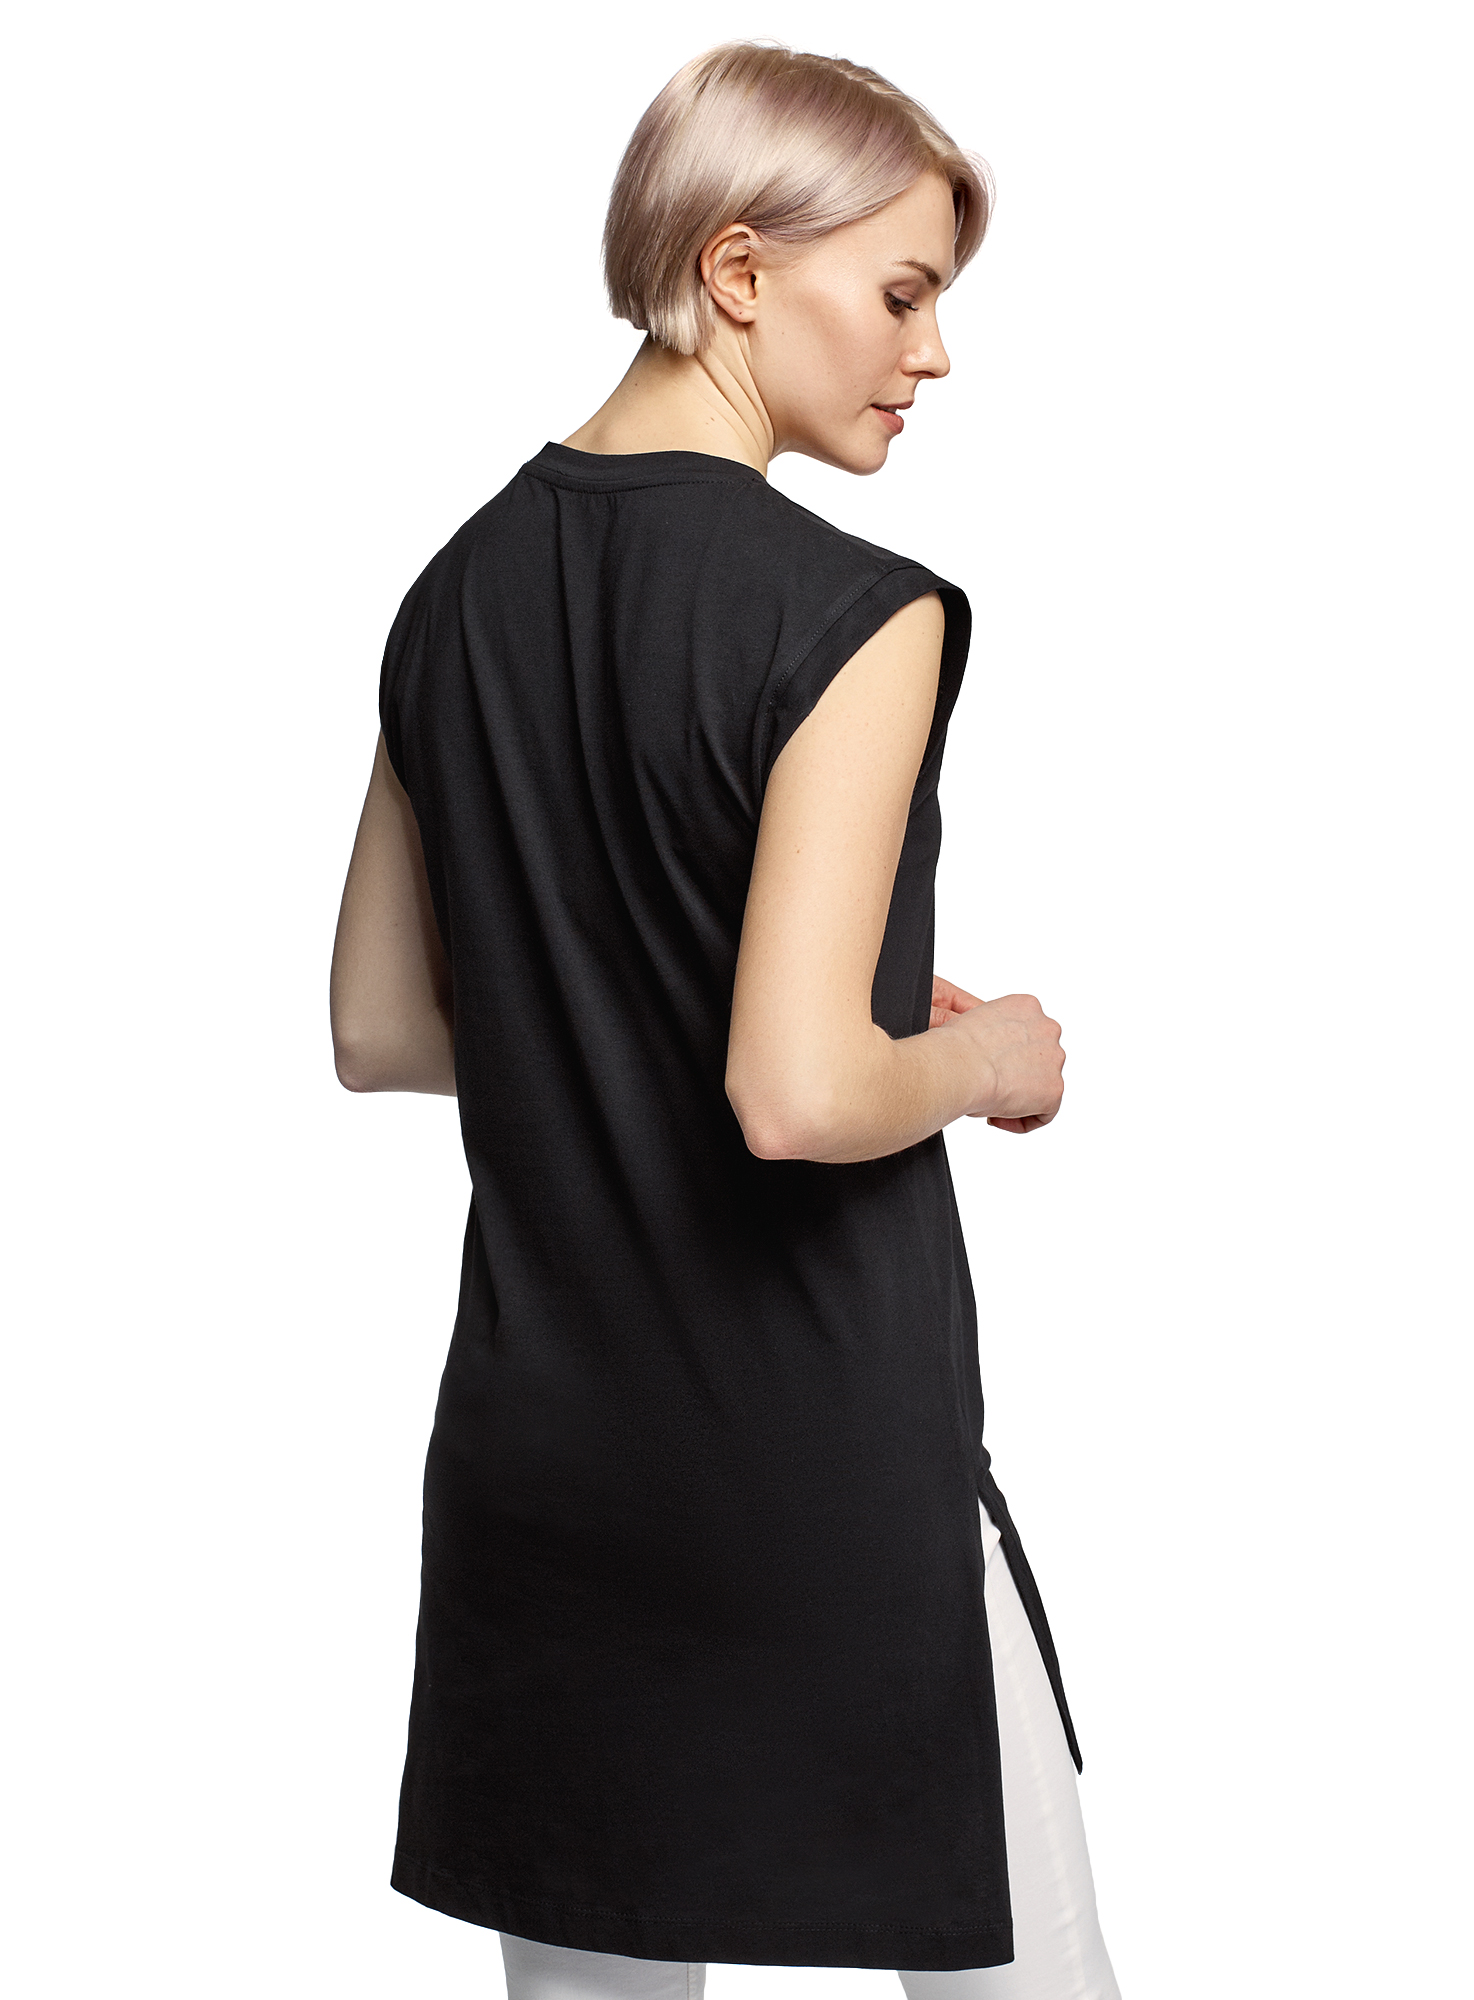 Платье женское oodji 14008040-2 черное XS